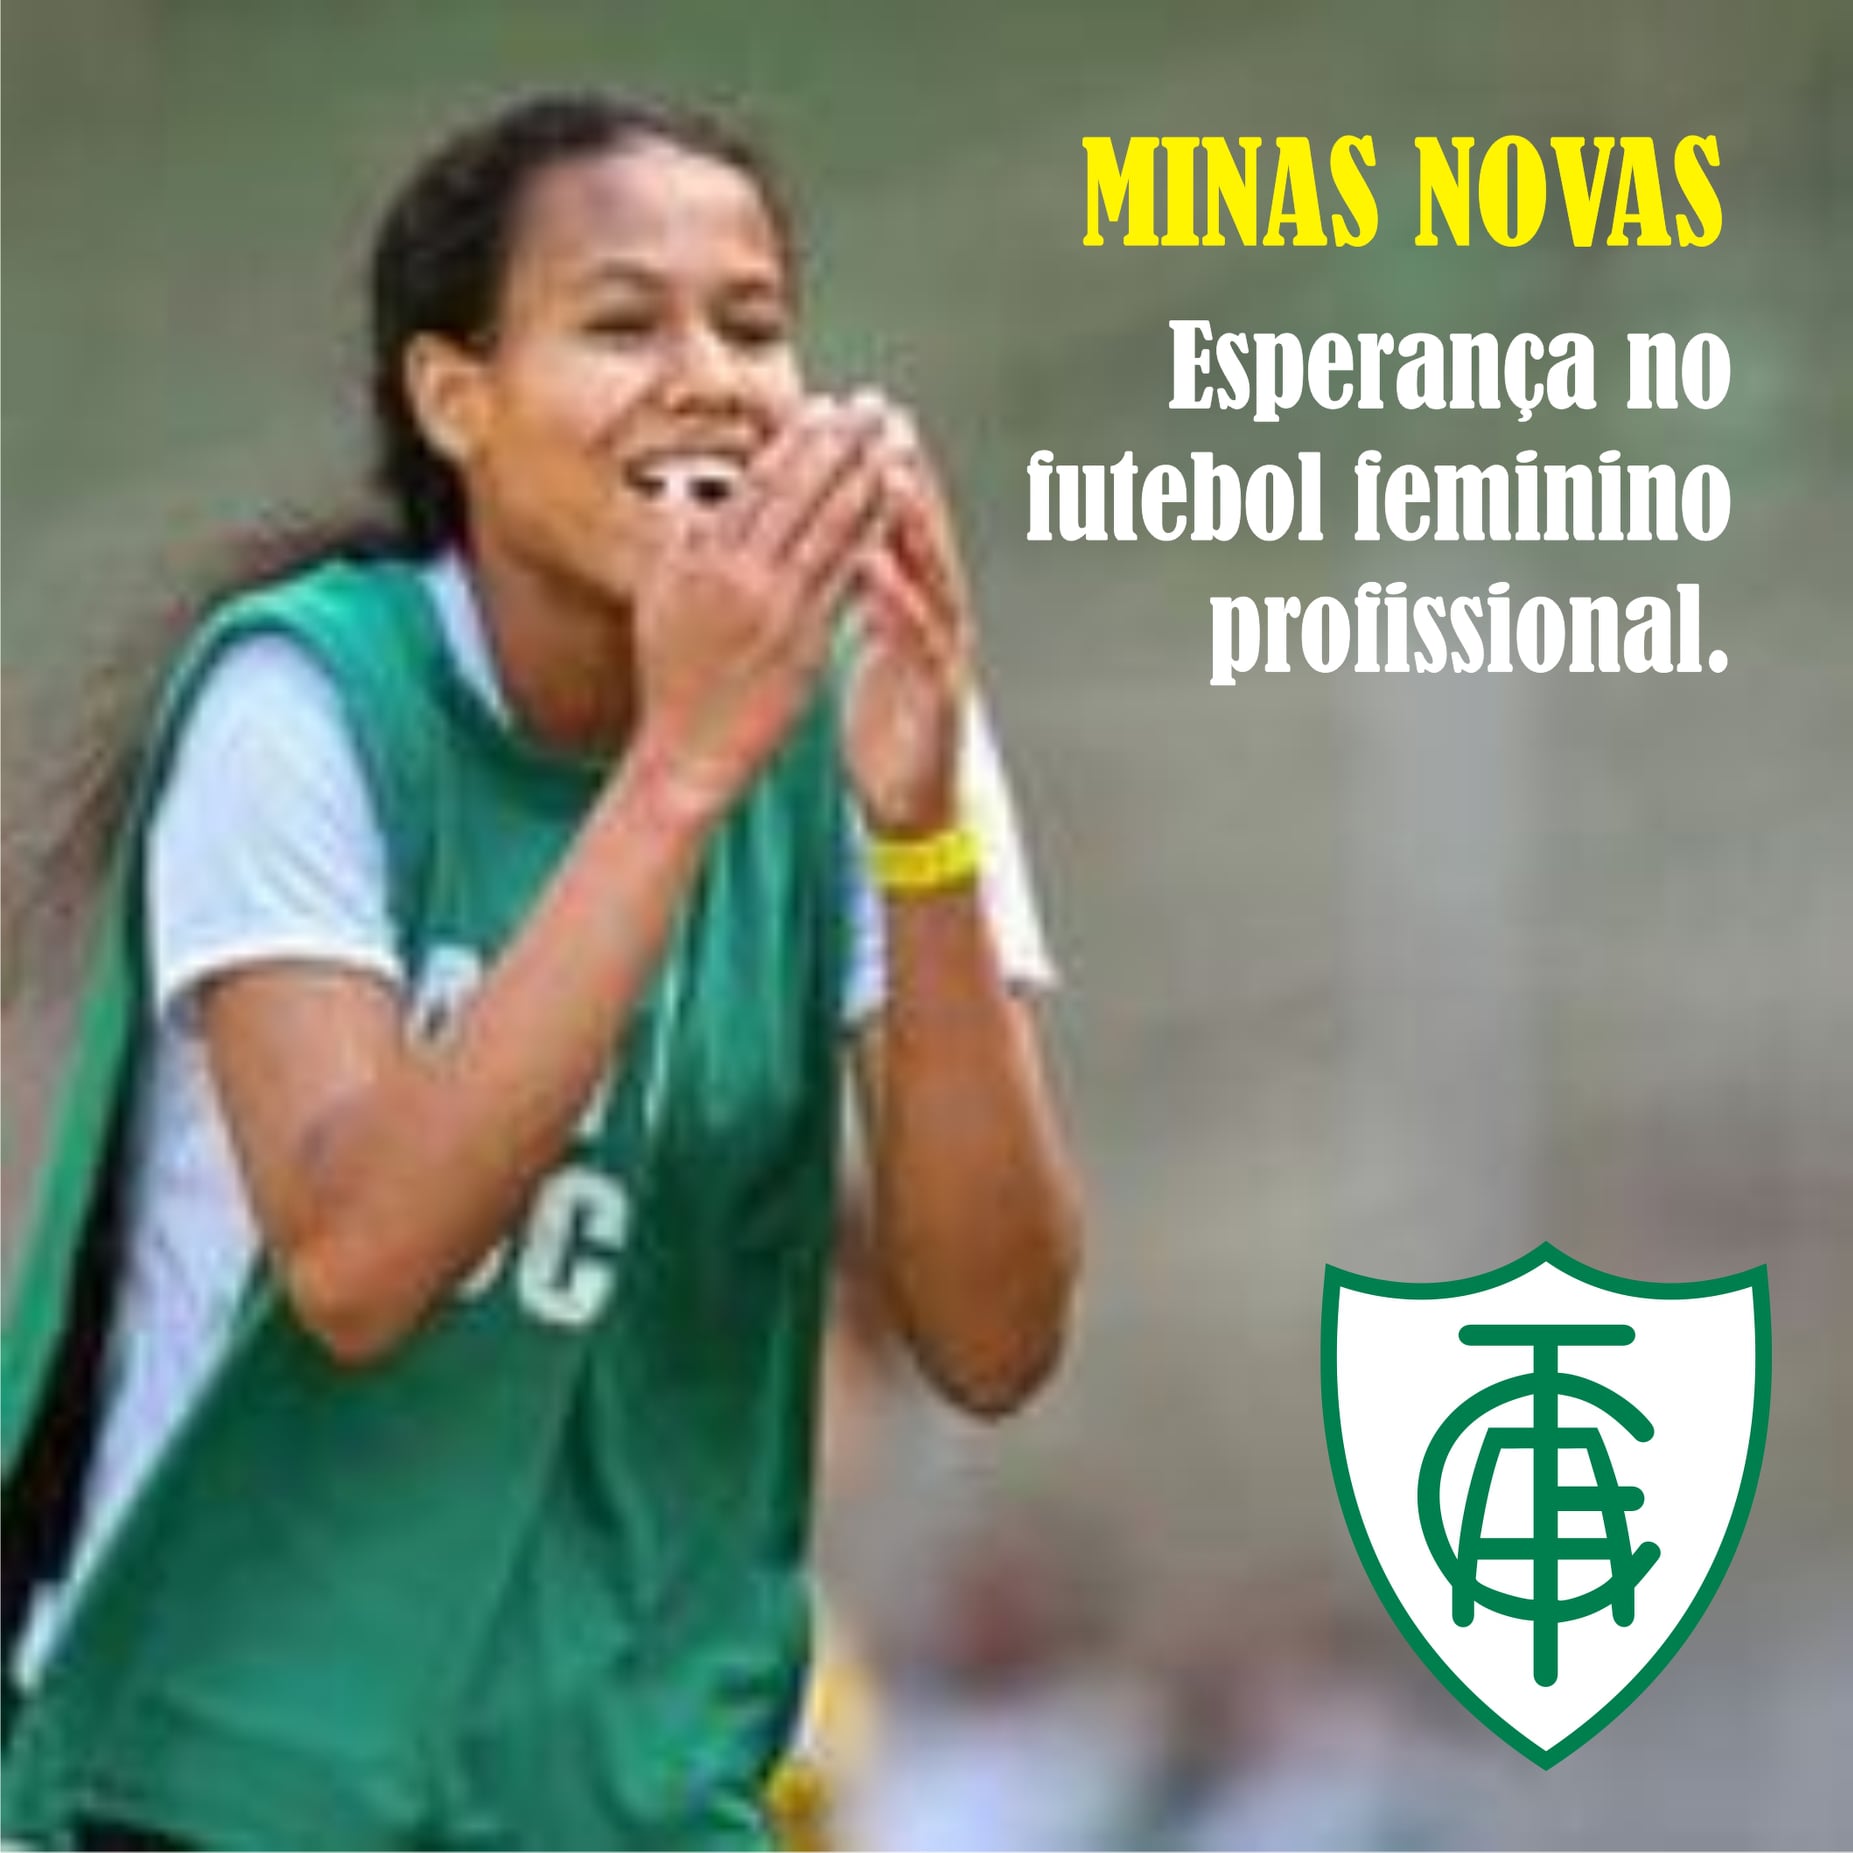 Minas Novas - Esperança no futebol feminino profissional